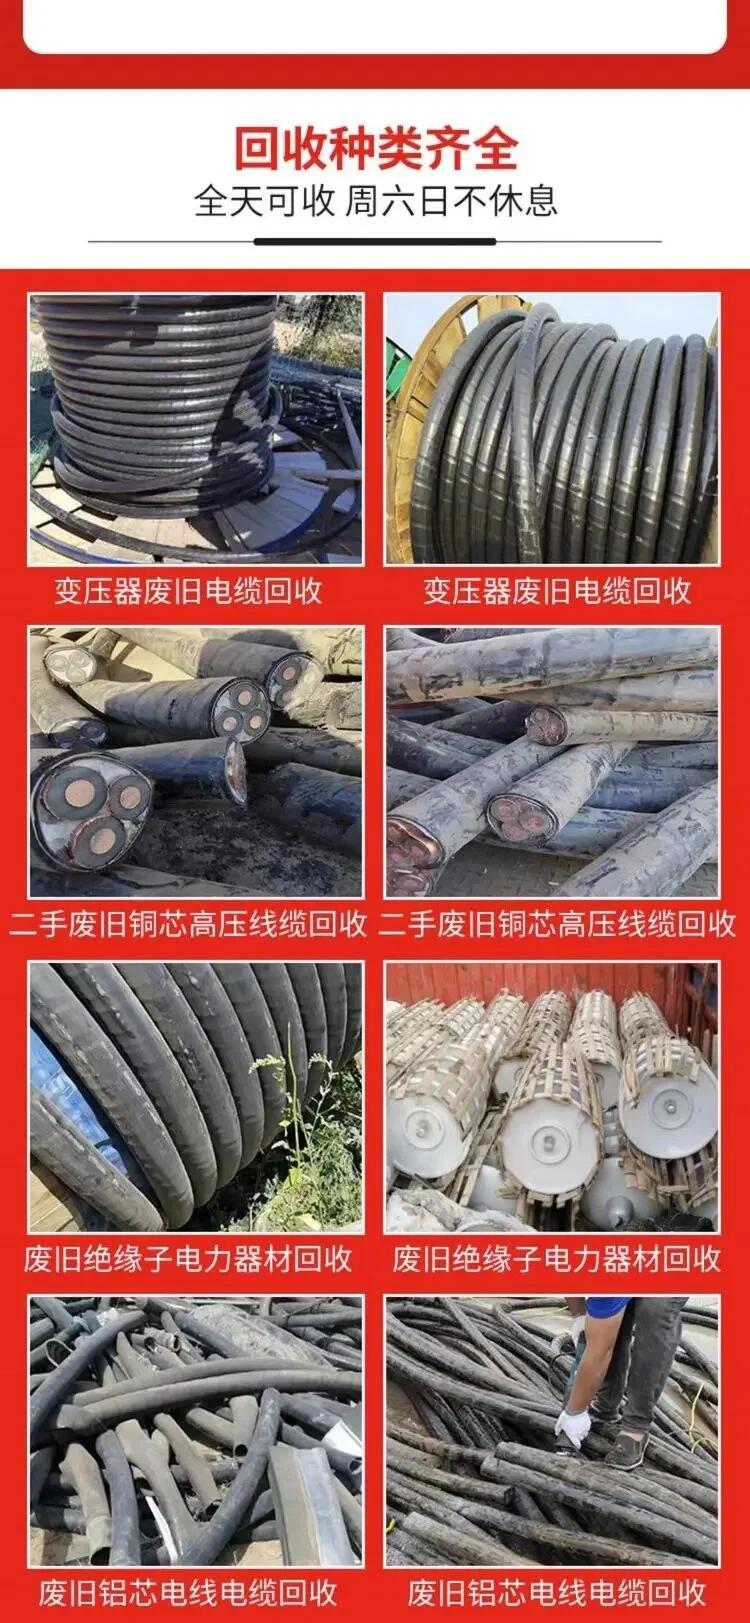 深圳大鹏新区废旧电柜拆除回收配电房收购公司负责报价